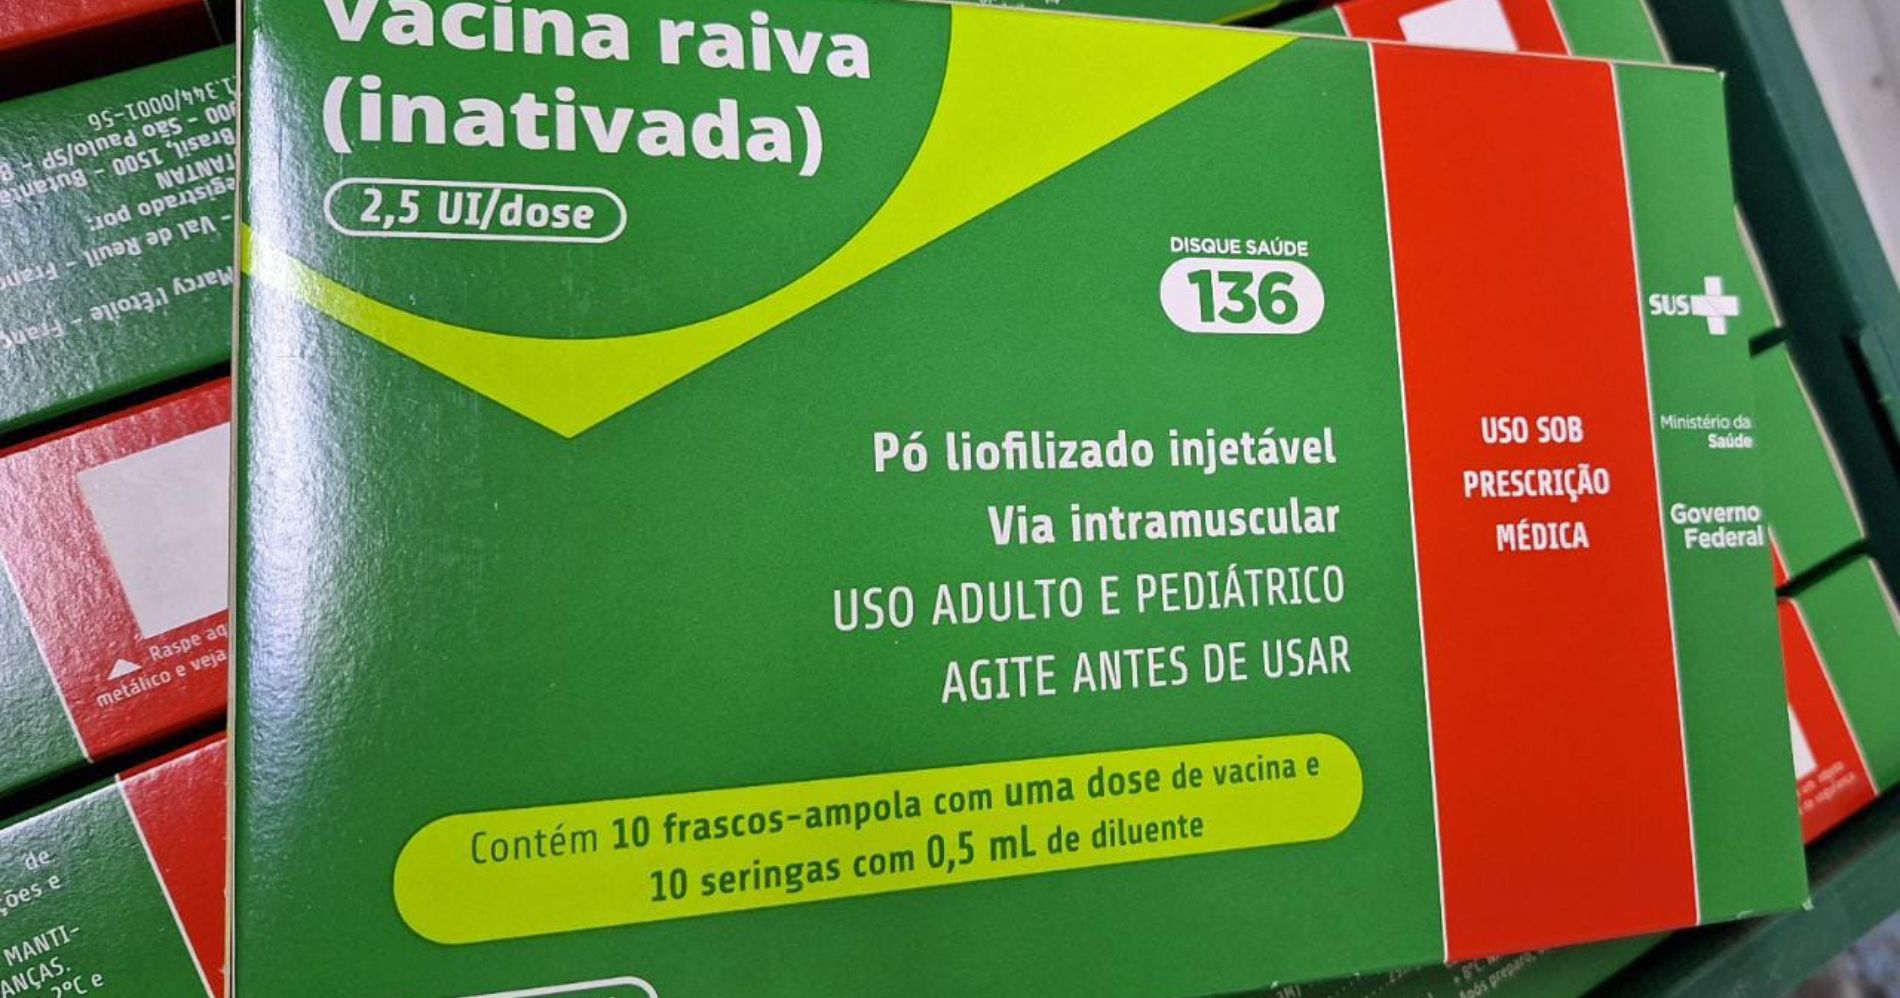 O Paraná é abastecido com 10 mil doses de vacina antirrábica pela Secretaria de Saúde